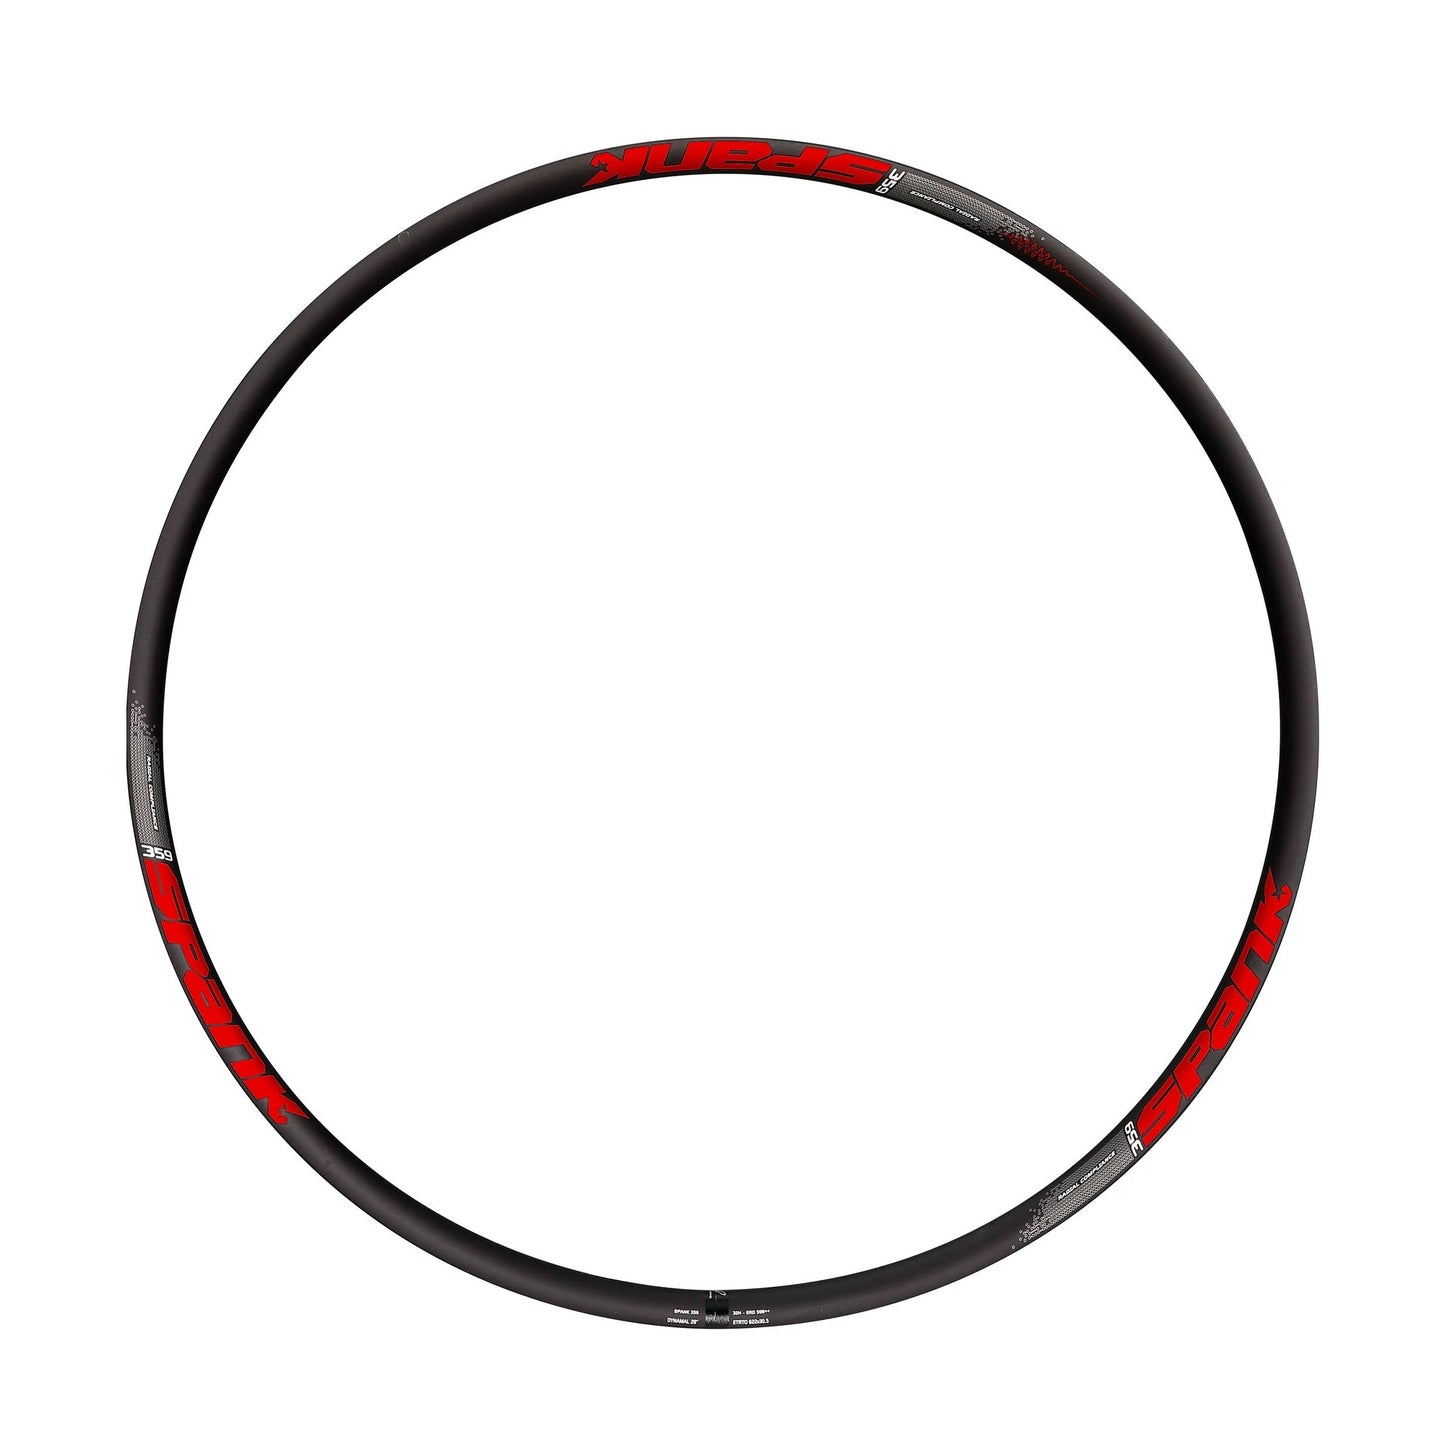 Spank 359 Vibrocore Bike Rim 29 - Black/Red